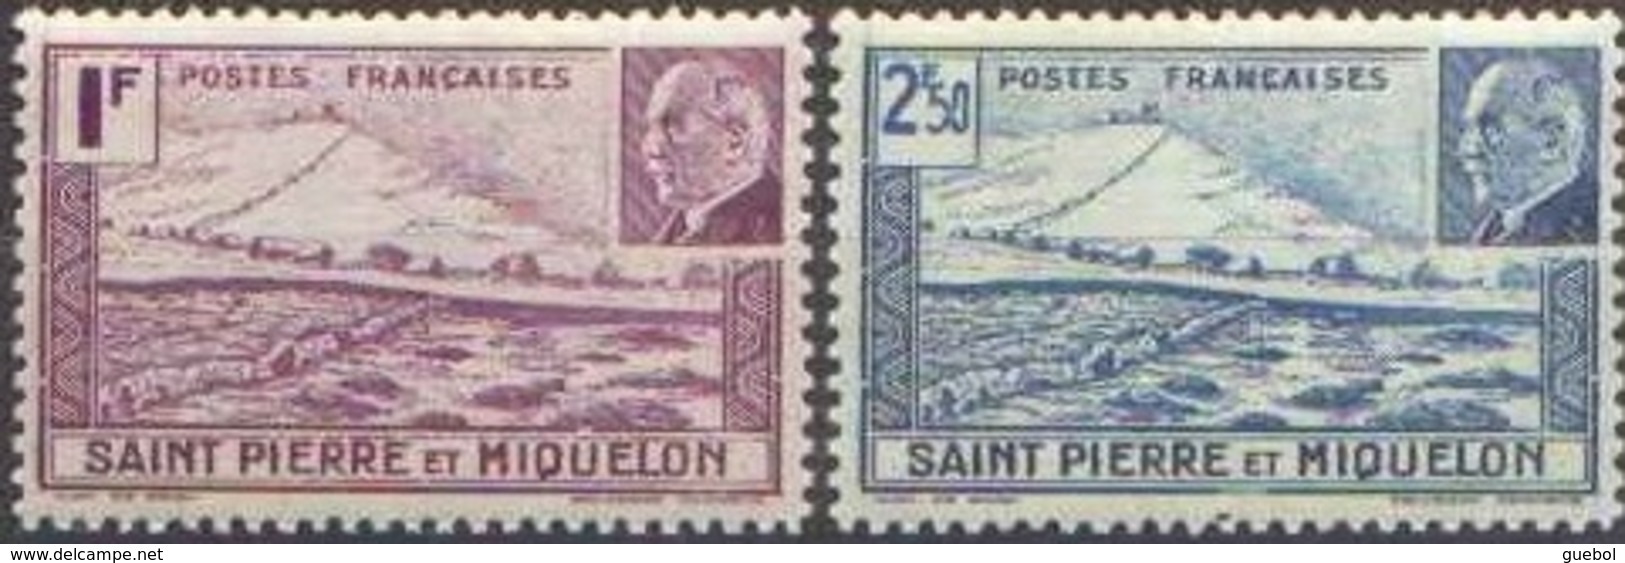 Colonie Fr. Maréchal Pétain Détail De La Série ** Saint Pierre Et Miquelon N° 210 Et 211 - 1941 Série Maréchal Pétain